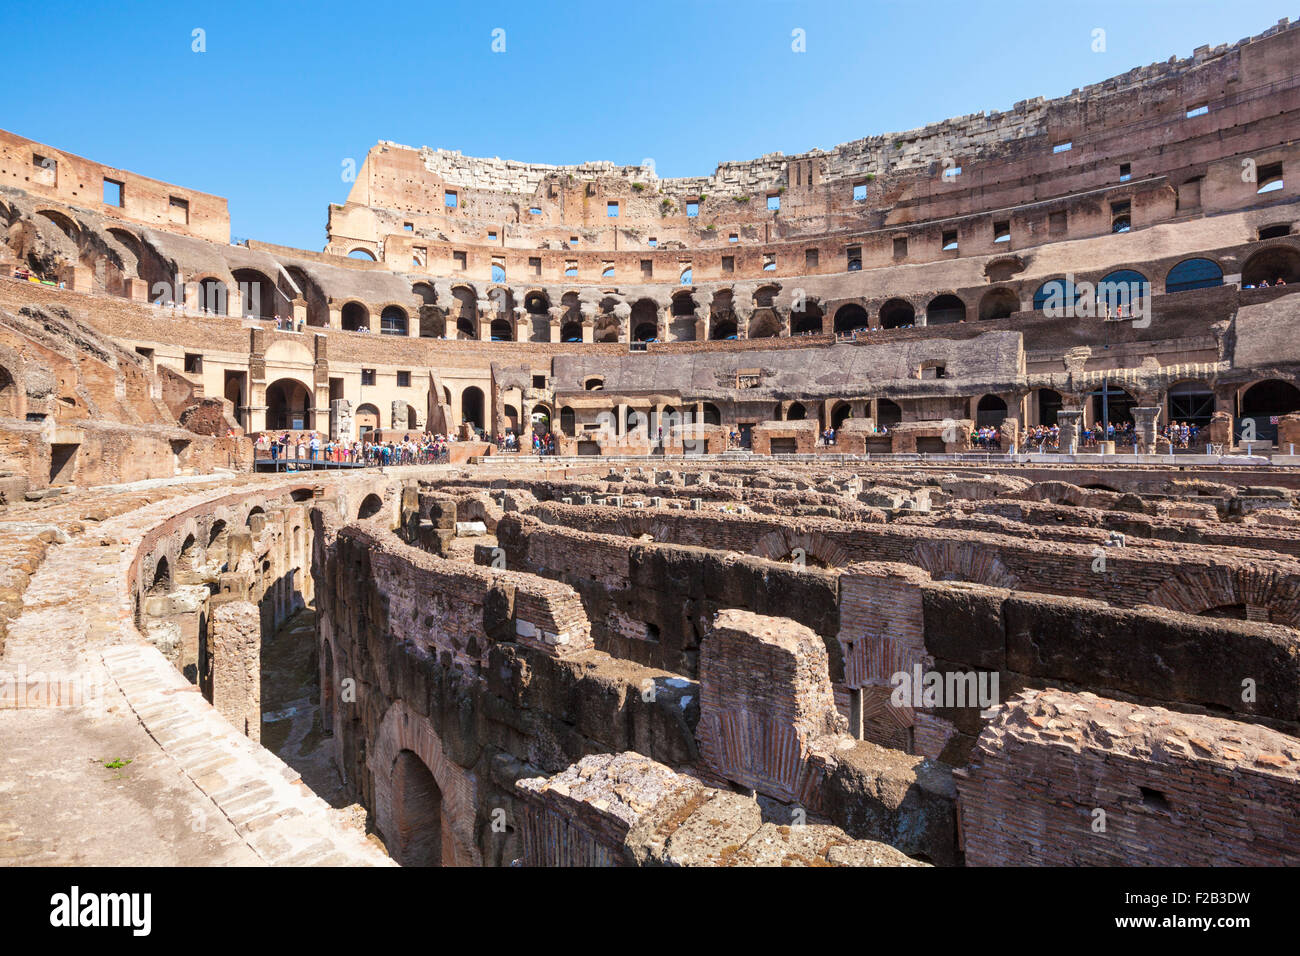 À l'intérieur de l'amphithéâtre Flavien ou Colisée de Rome à l'ensemble des fouilles de l'arène Rome Lazio Italie Région Europe de l'UE Banque D'Images